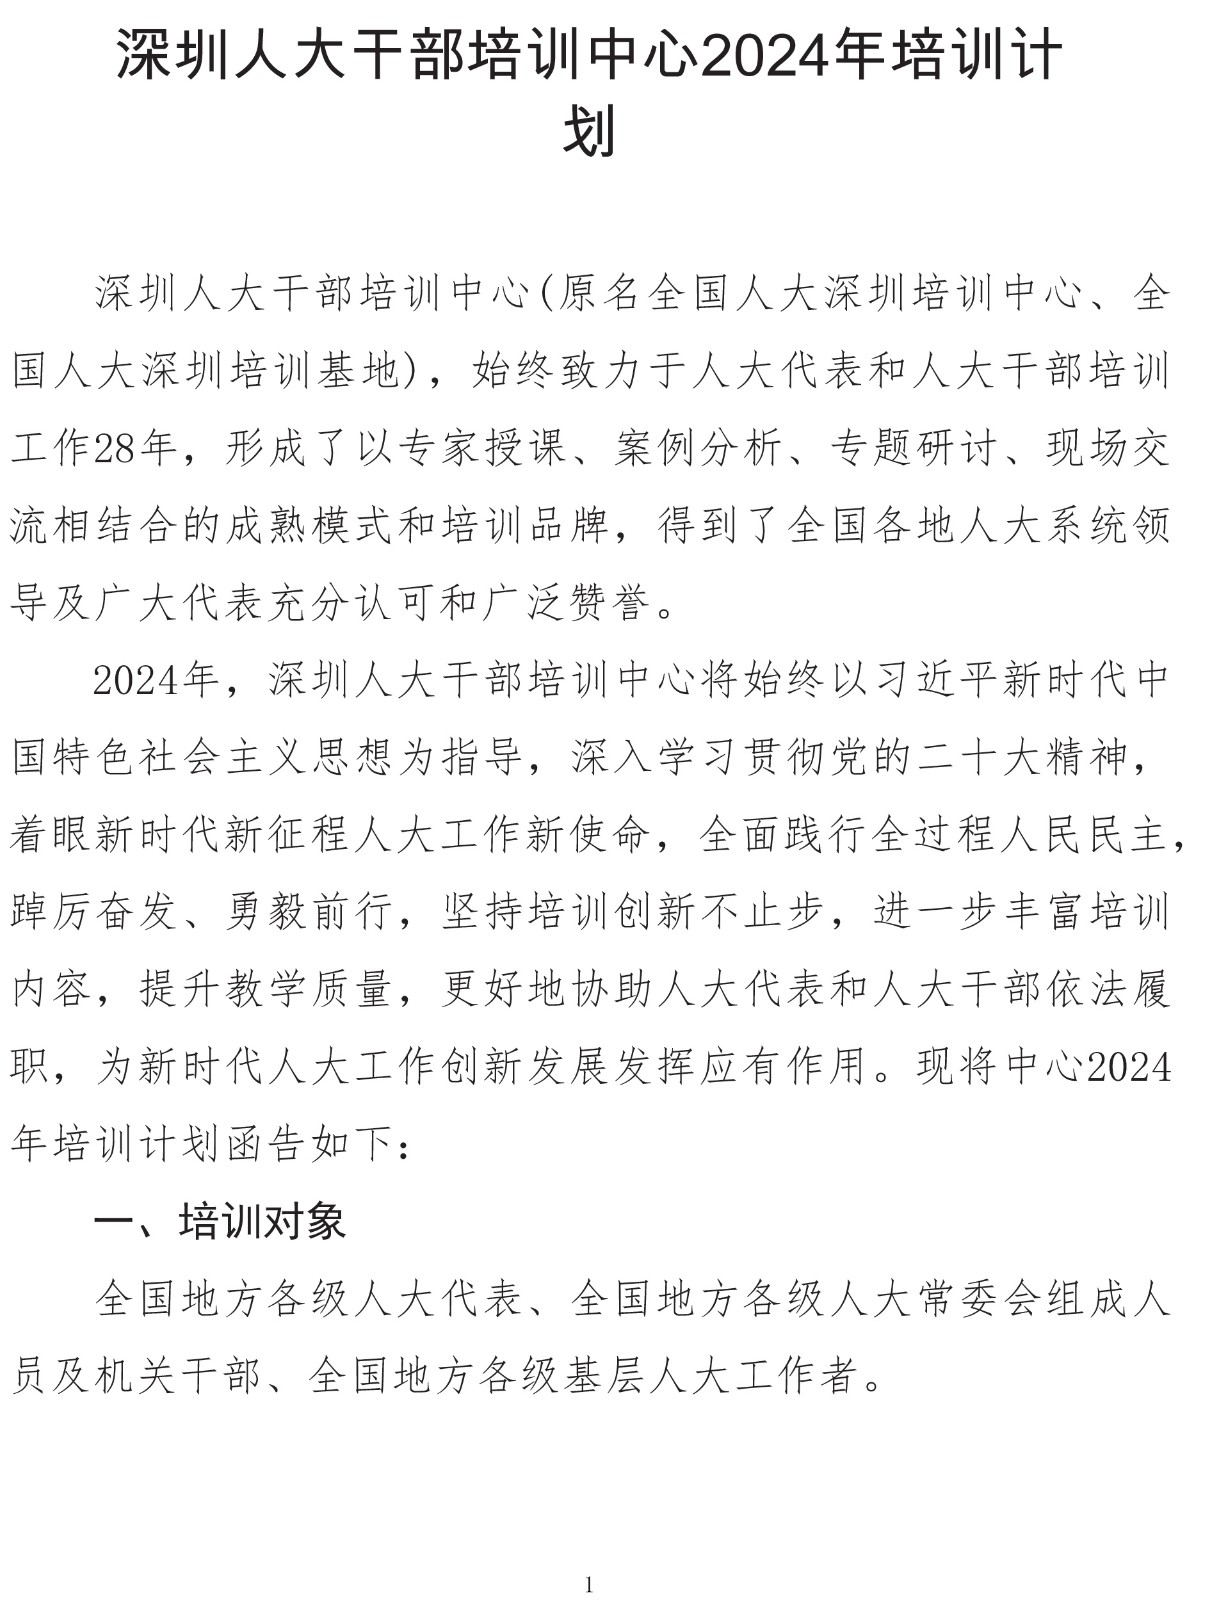 深圳人大干部培训中心2024年培训计划-1.jpg